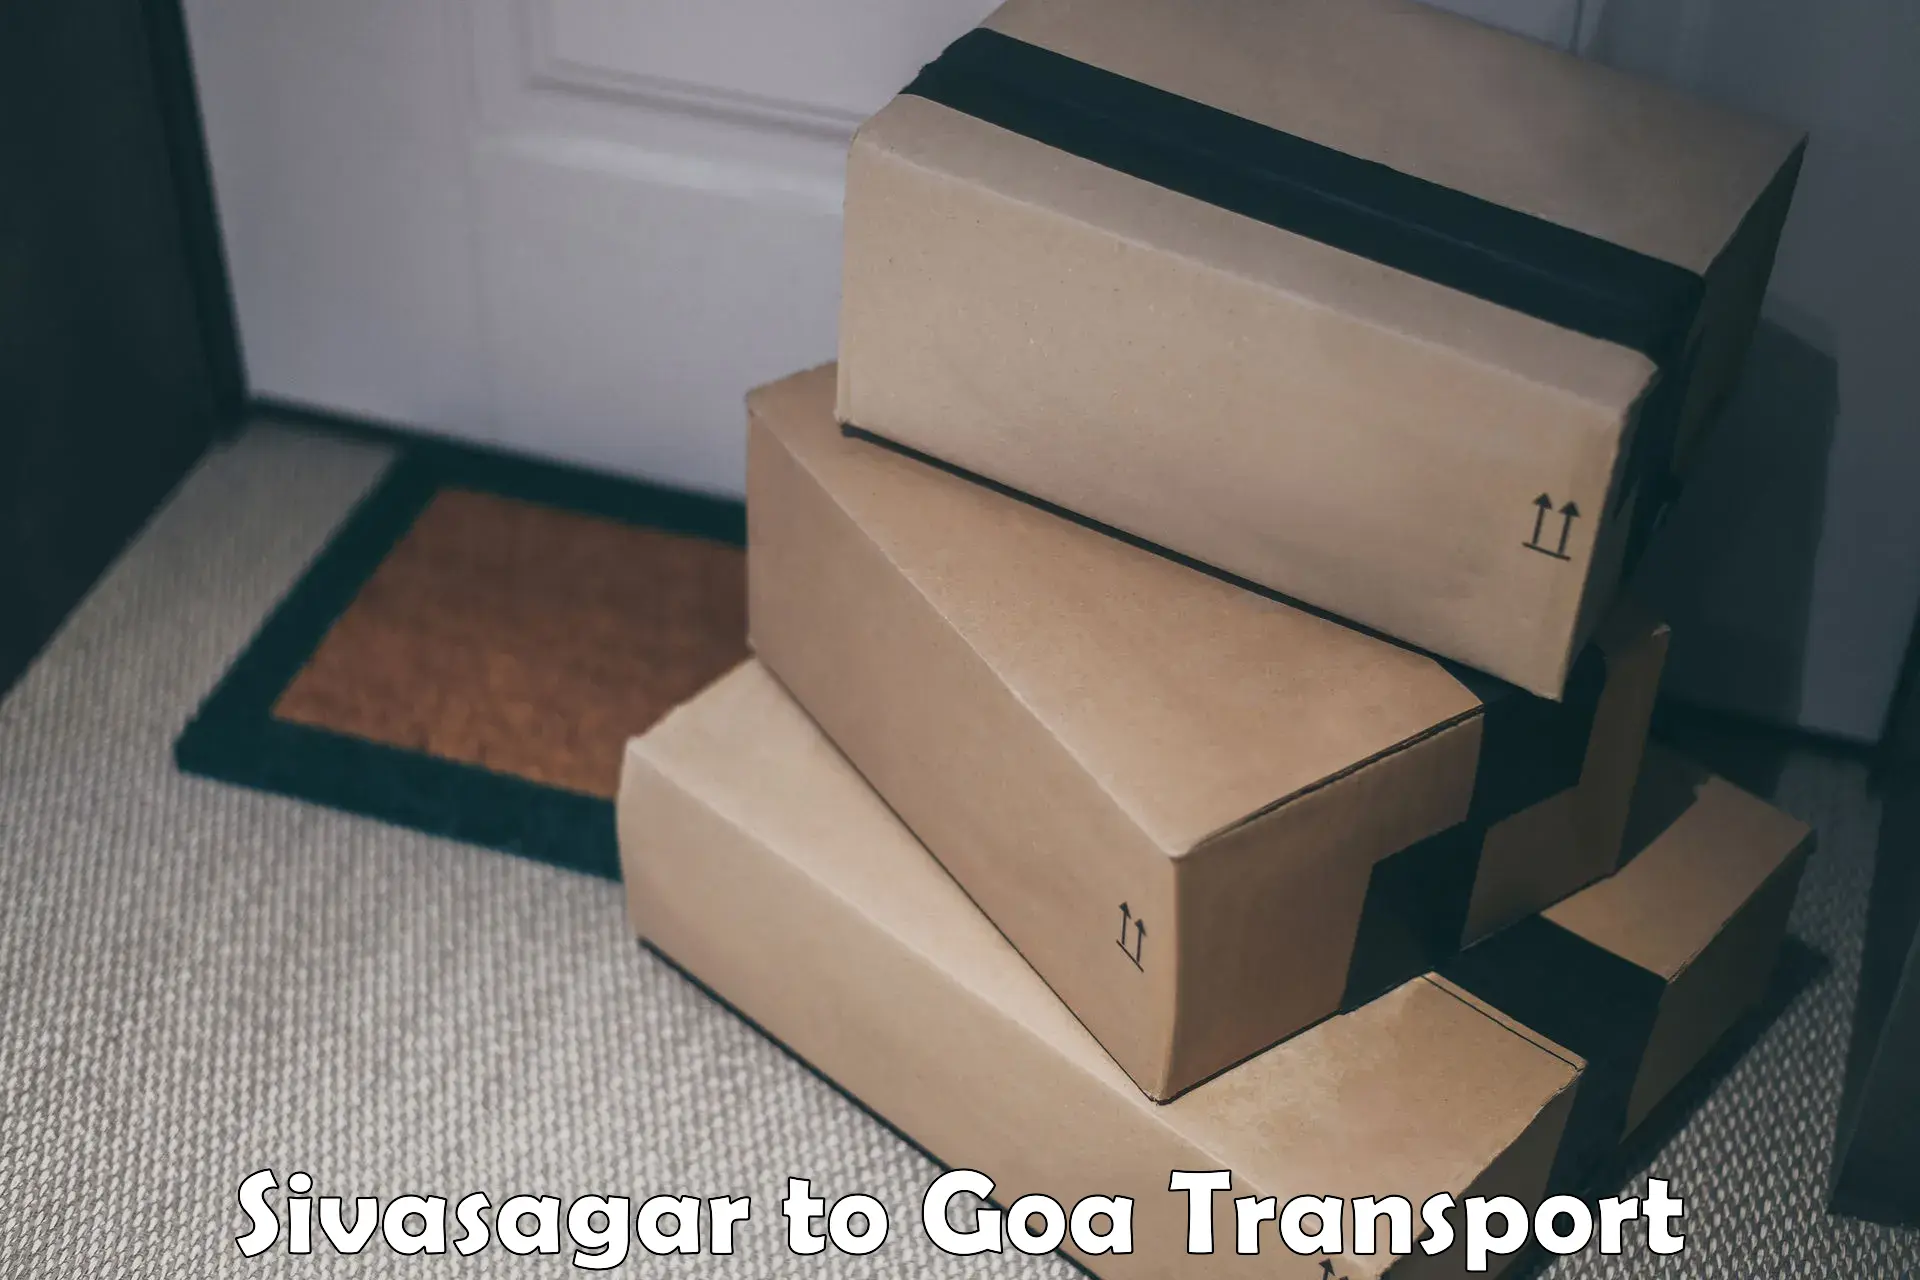 Best transport services in India Sivasagar to IIT Goa